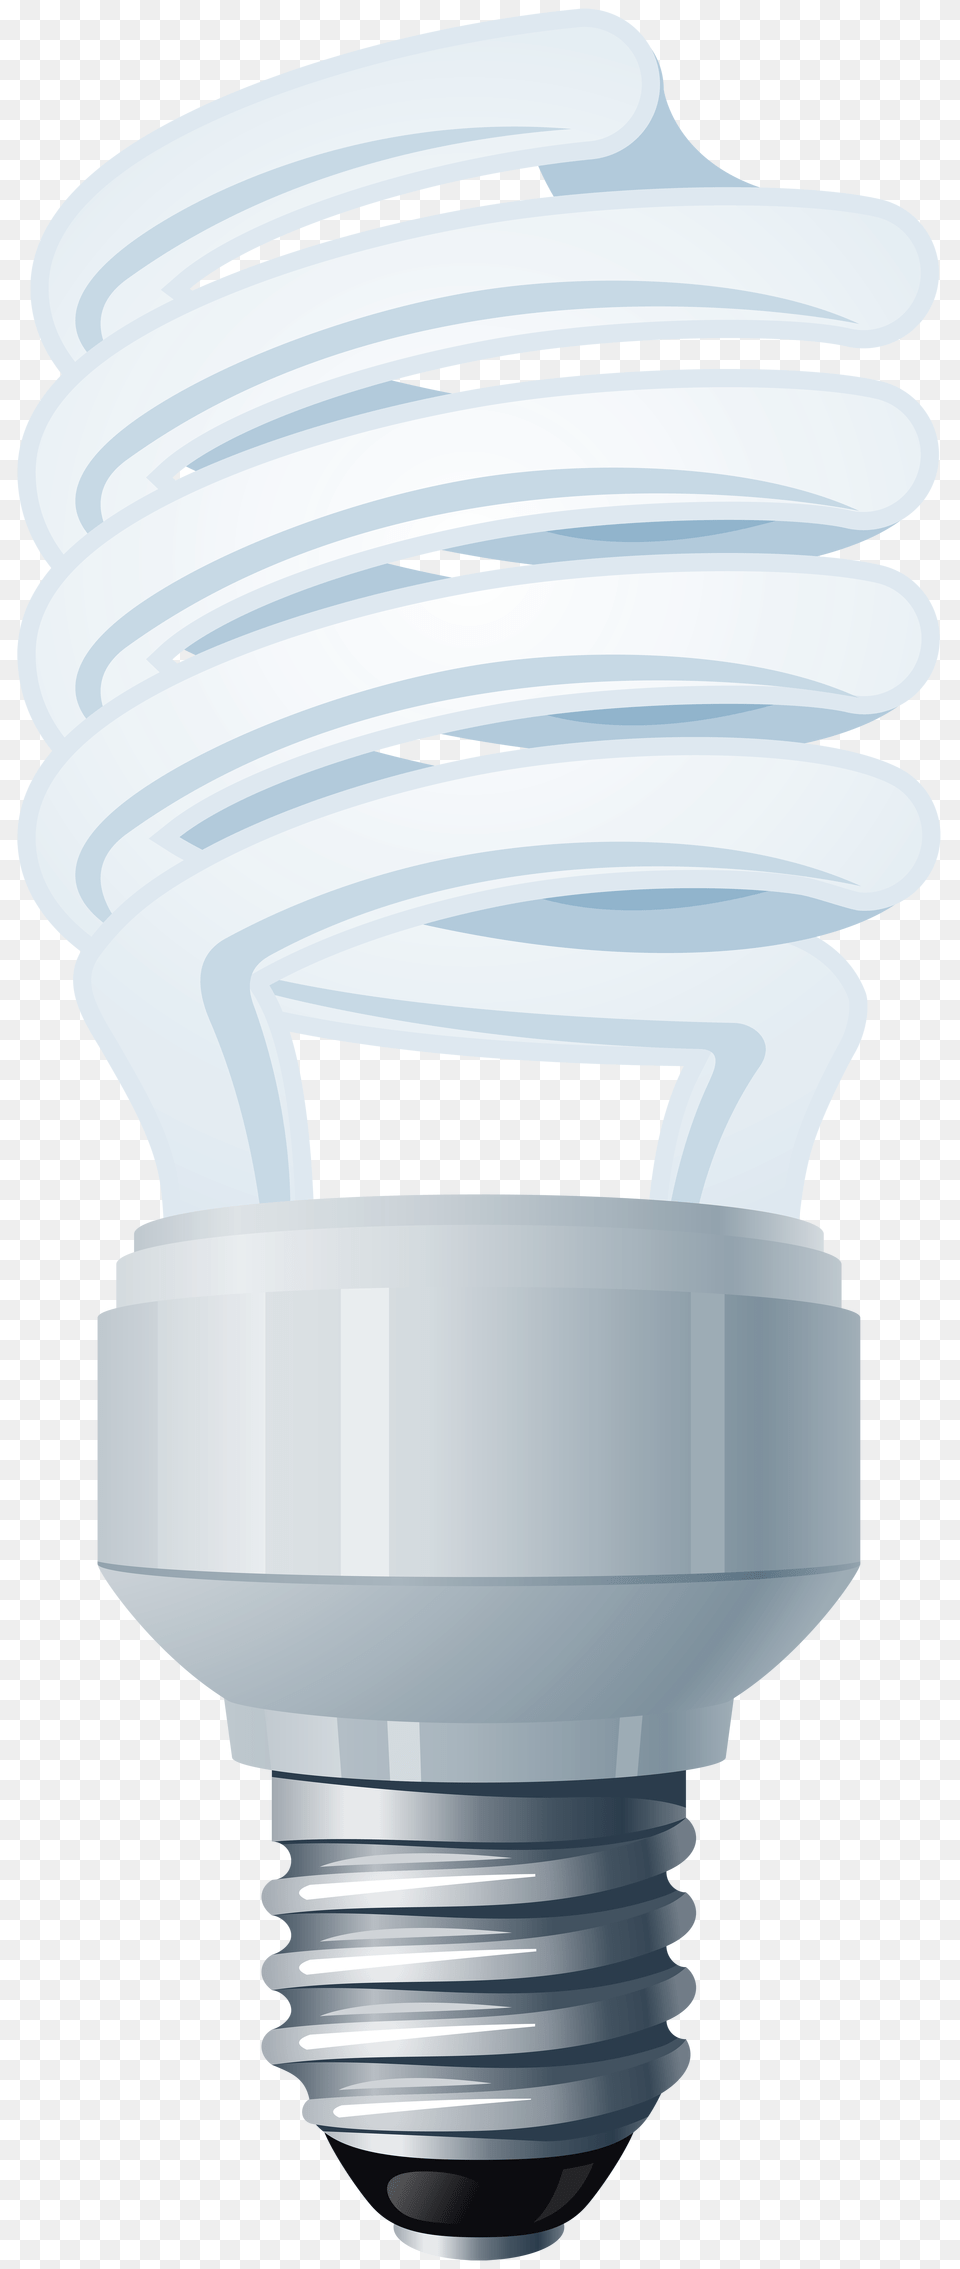 Energy Saving Light Bulb Clip Art, Lightbulb Png Image